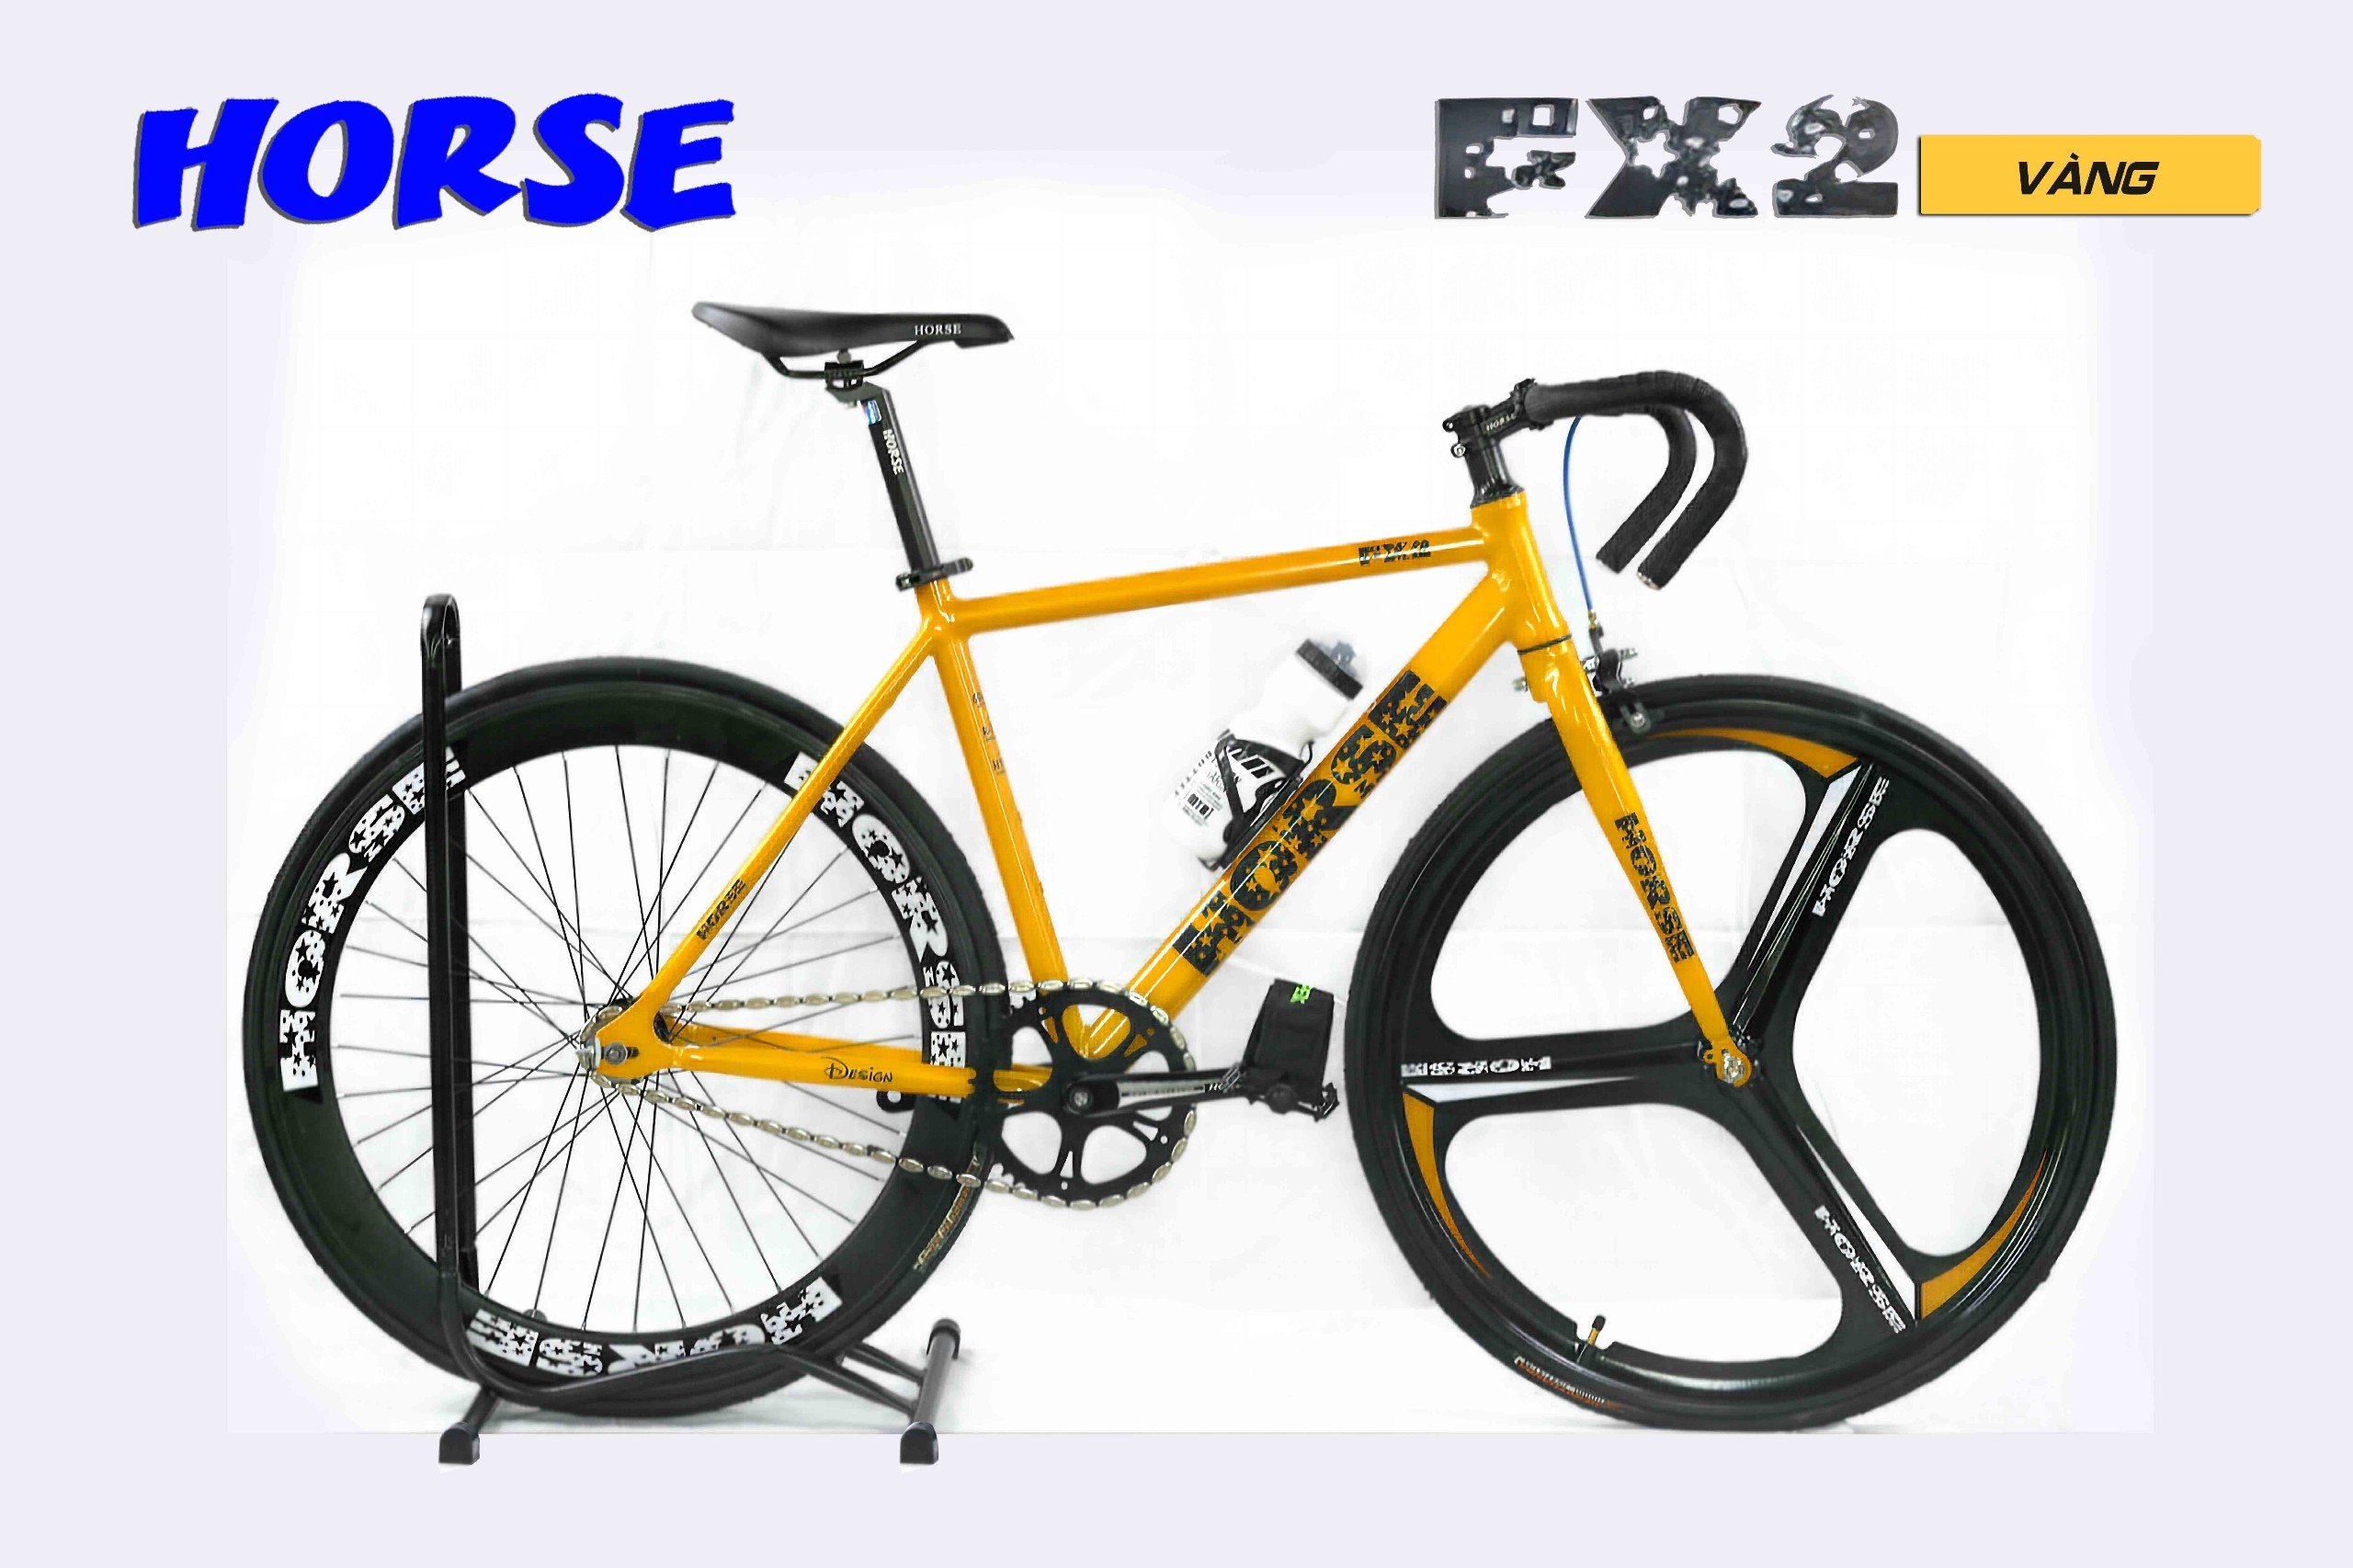 Xe đạp Fixed Gear Life Horse FX 2 vành 3 đao